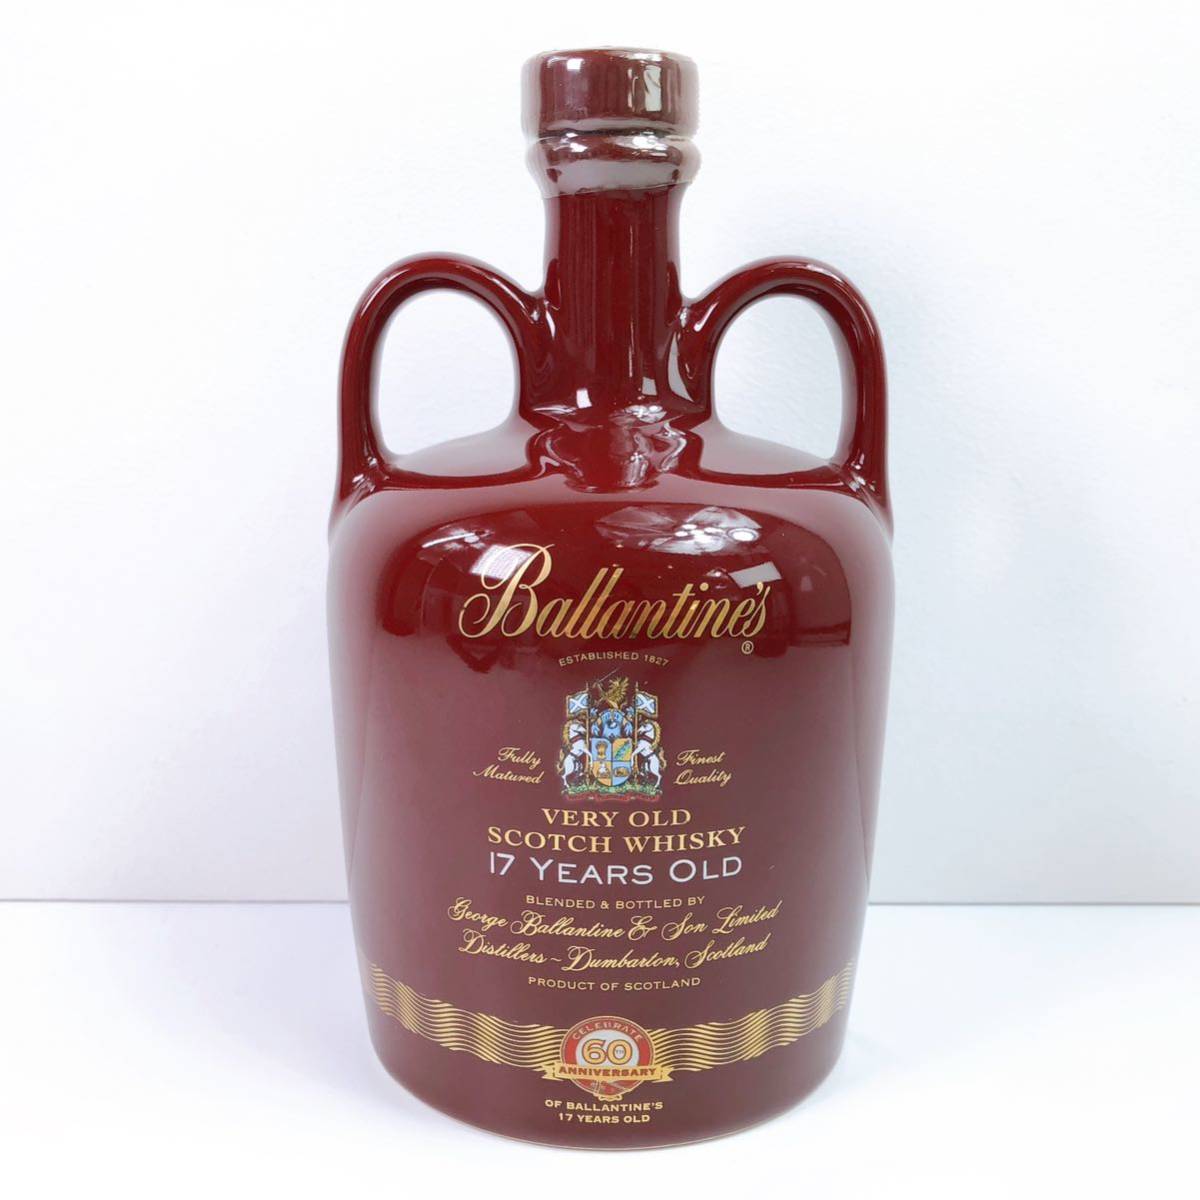 古酒 バランタイン Ballantines 30年 赤キャップ グリーンボトル-